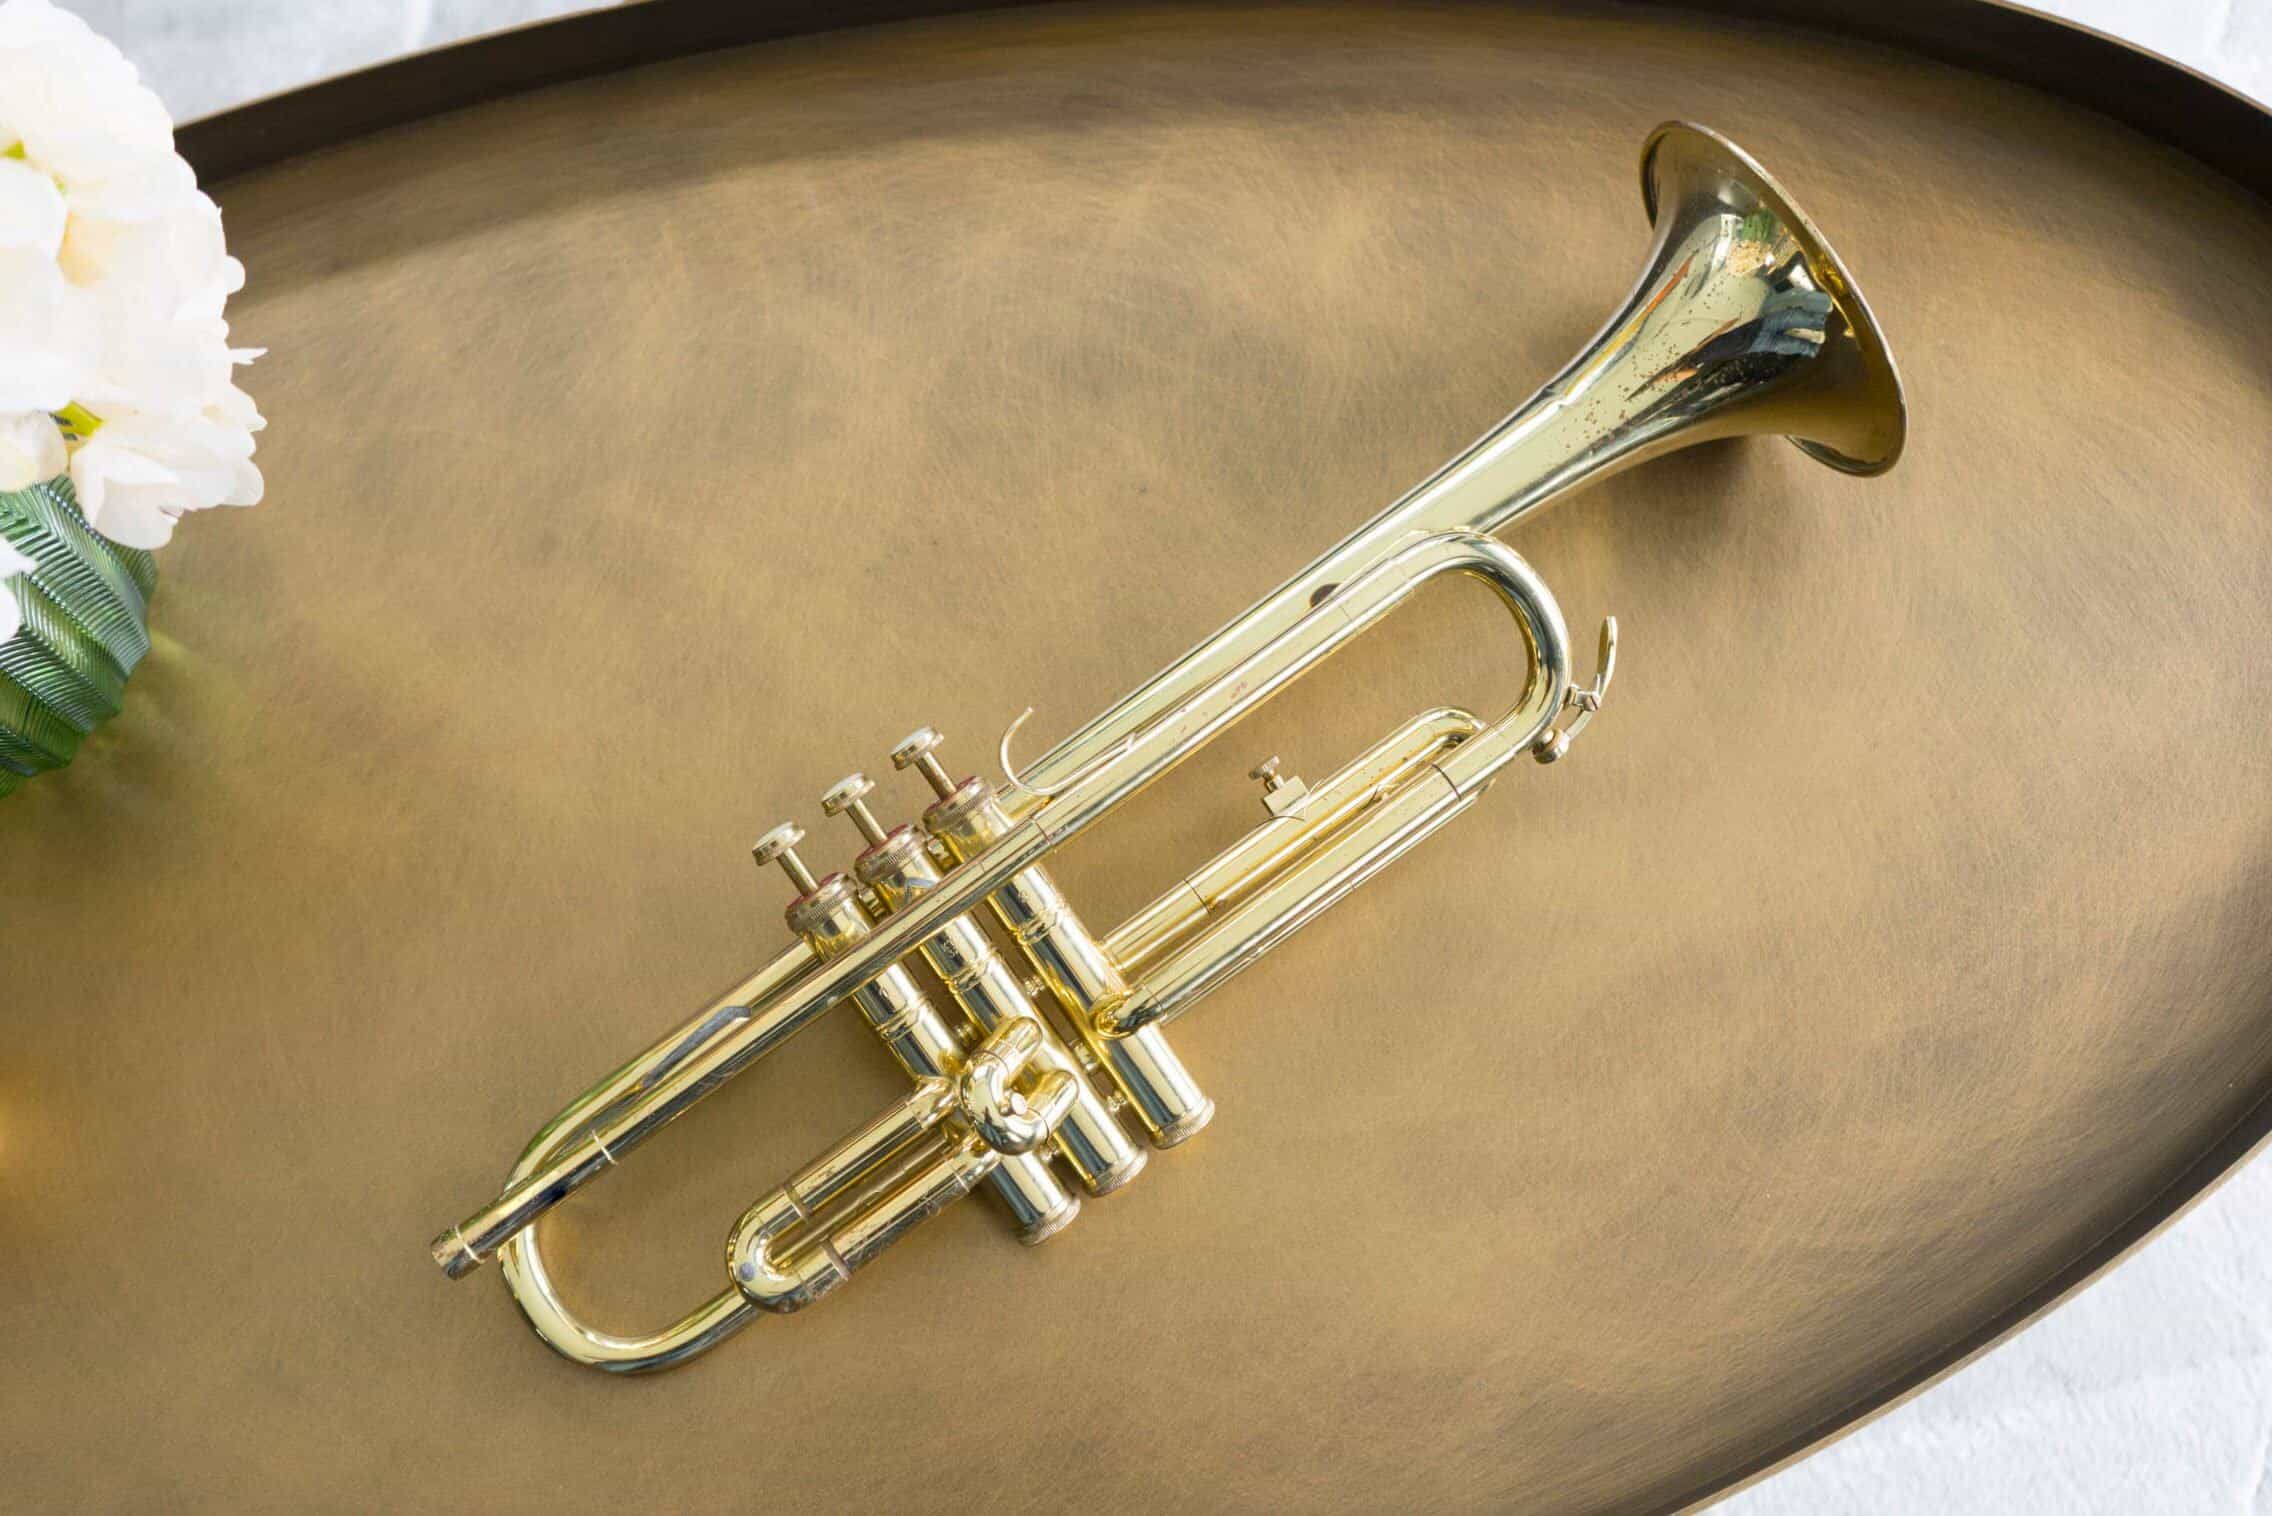 Brass Fixtures or Instruments